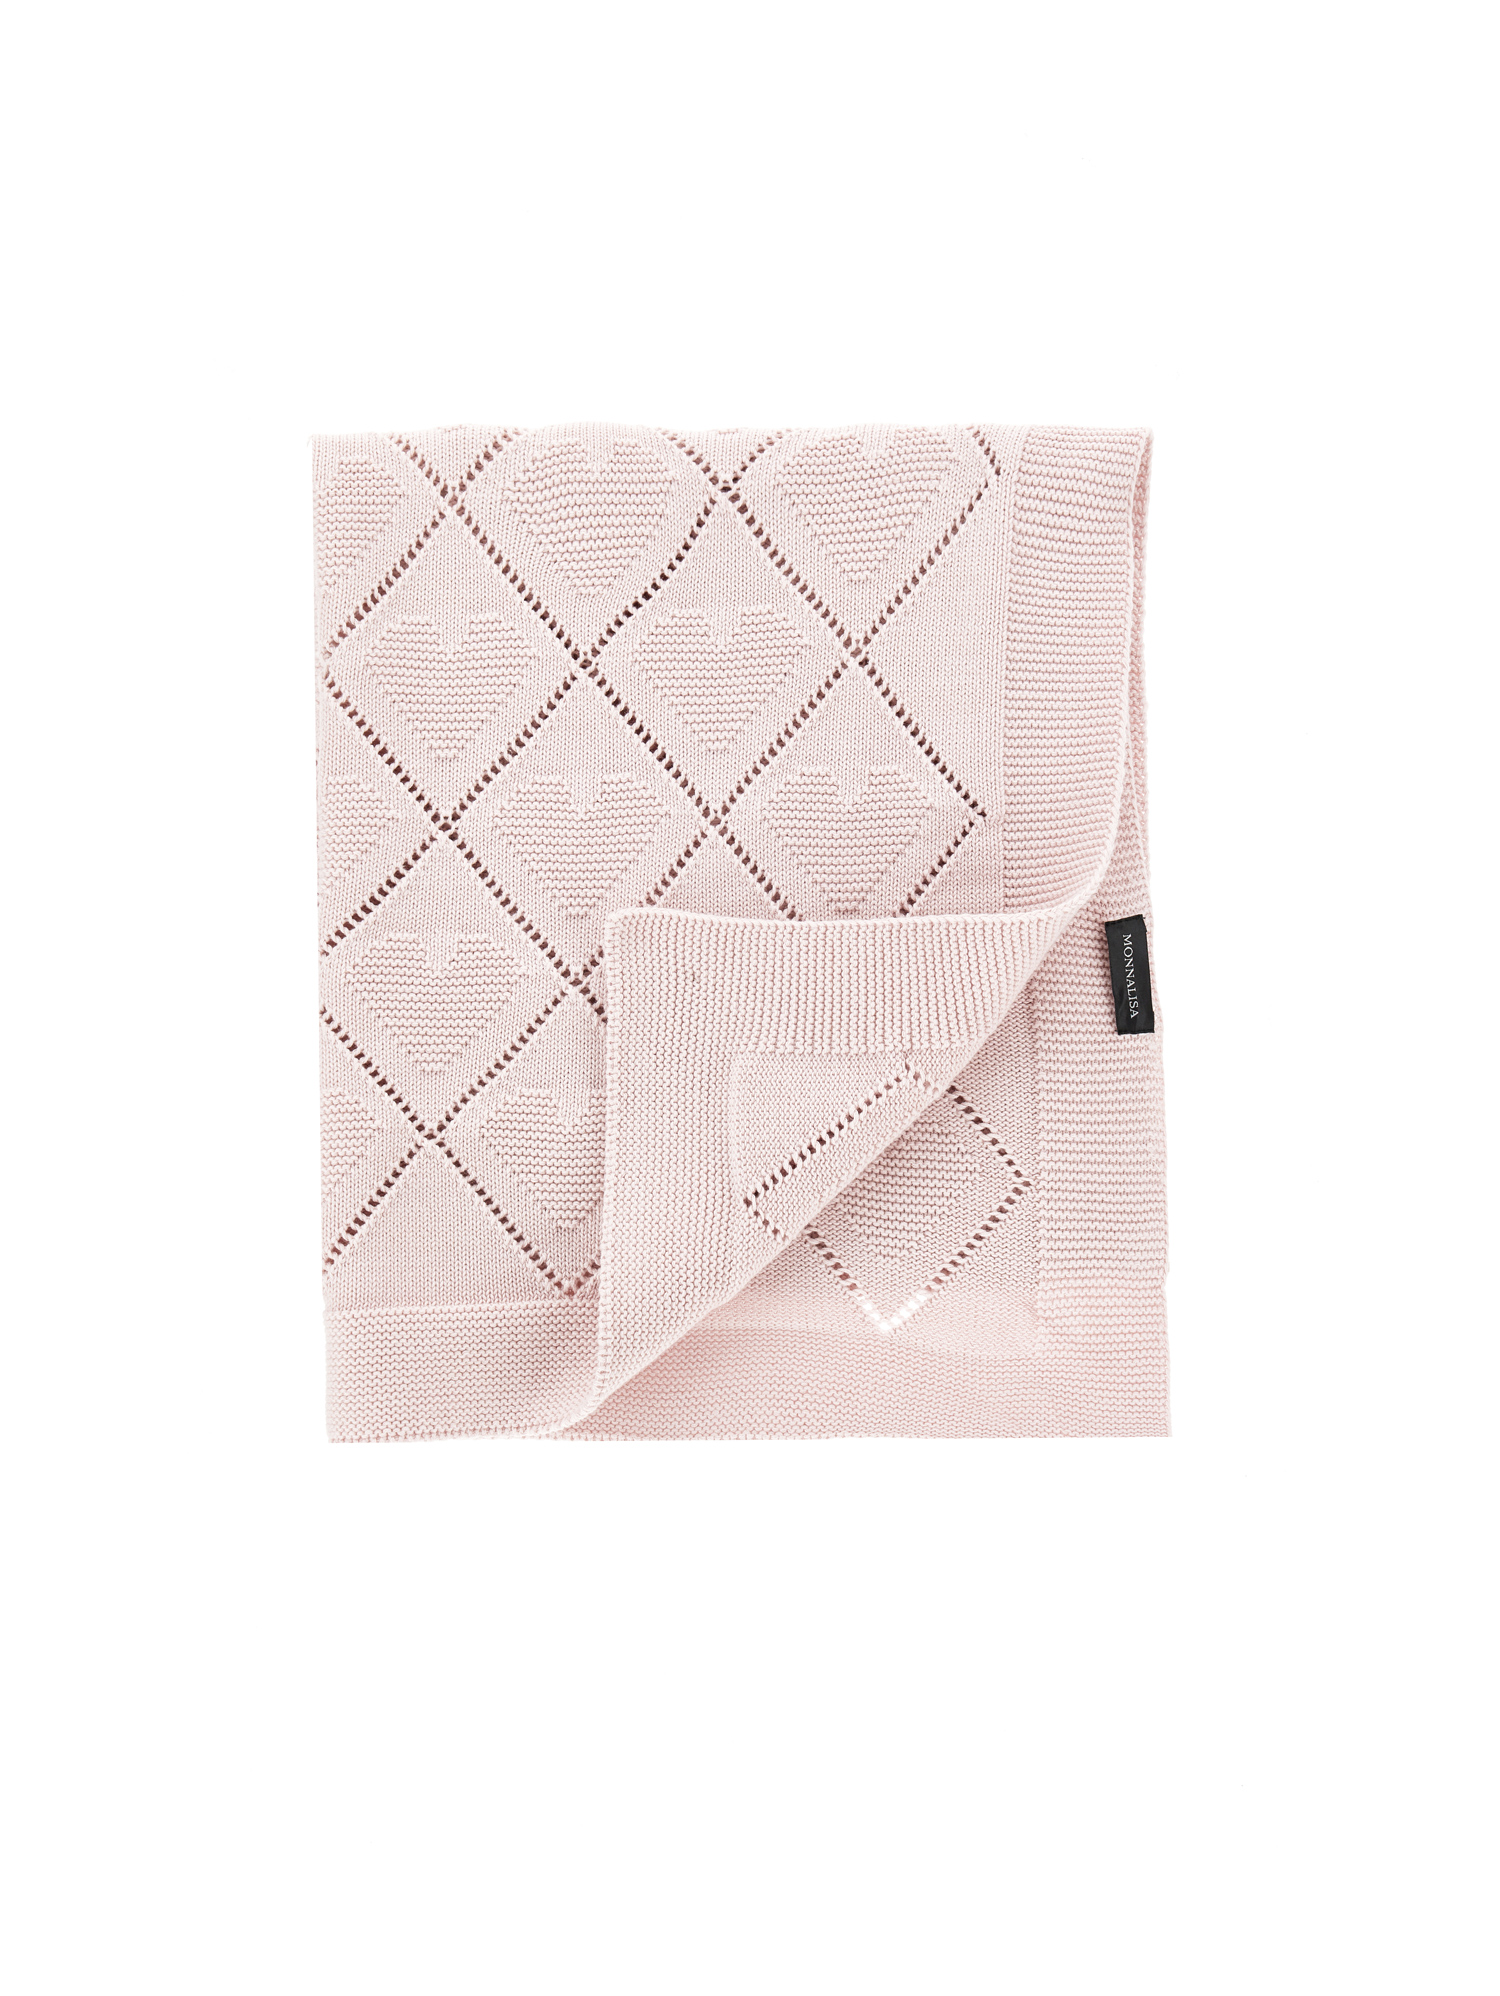 Monnalisa Blanket In Heart Knit In Dusty Pink Rose